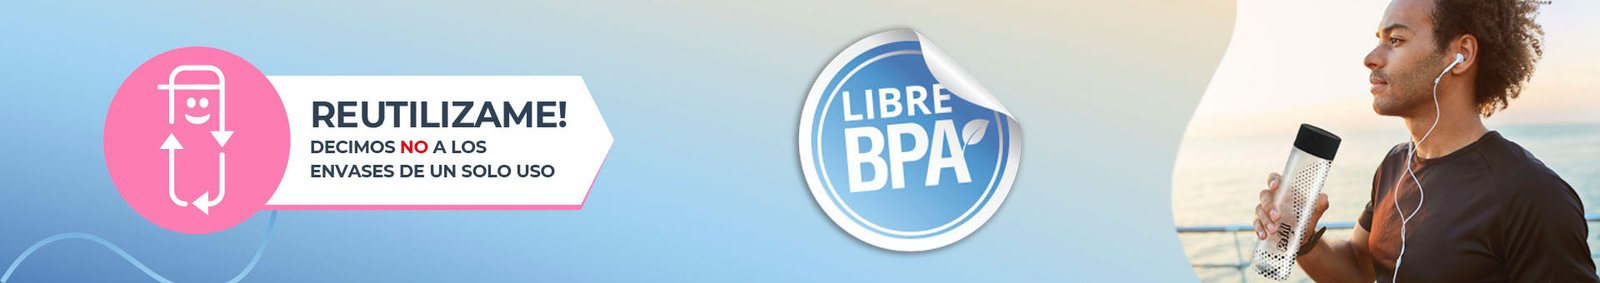 Reutilizame Libre BPA